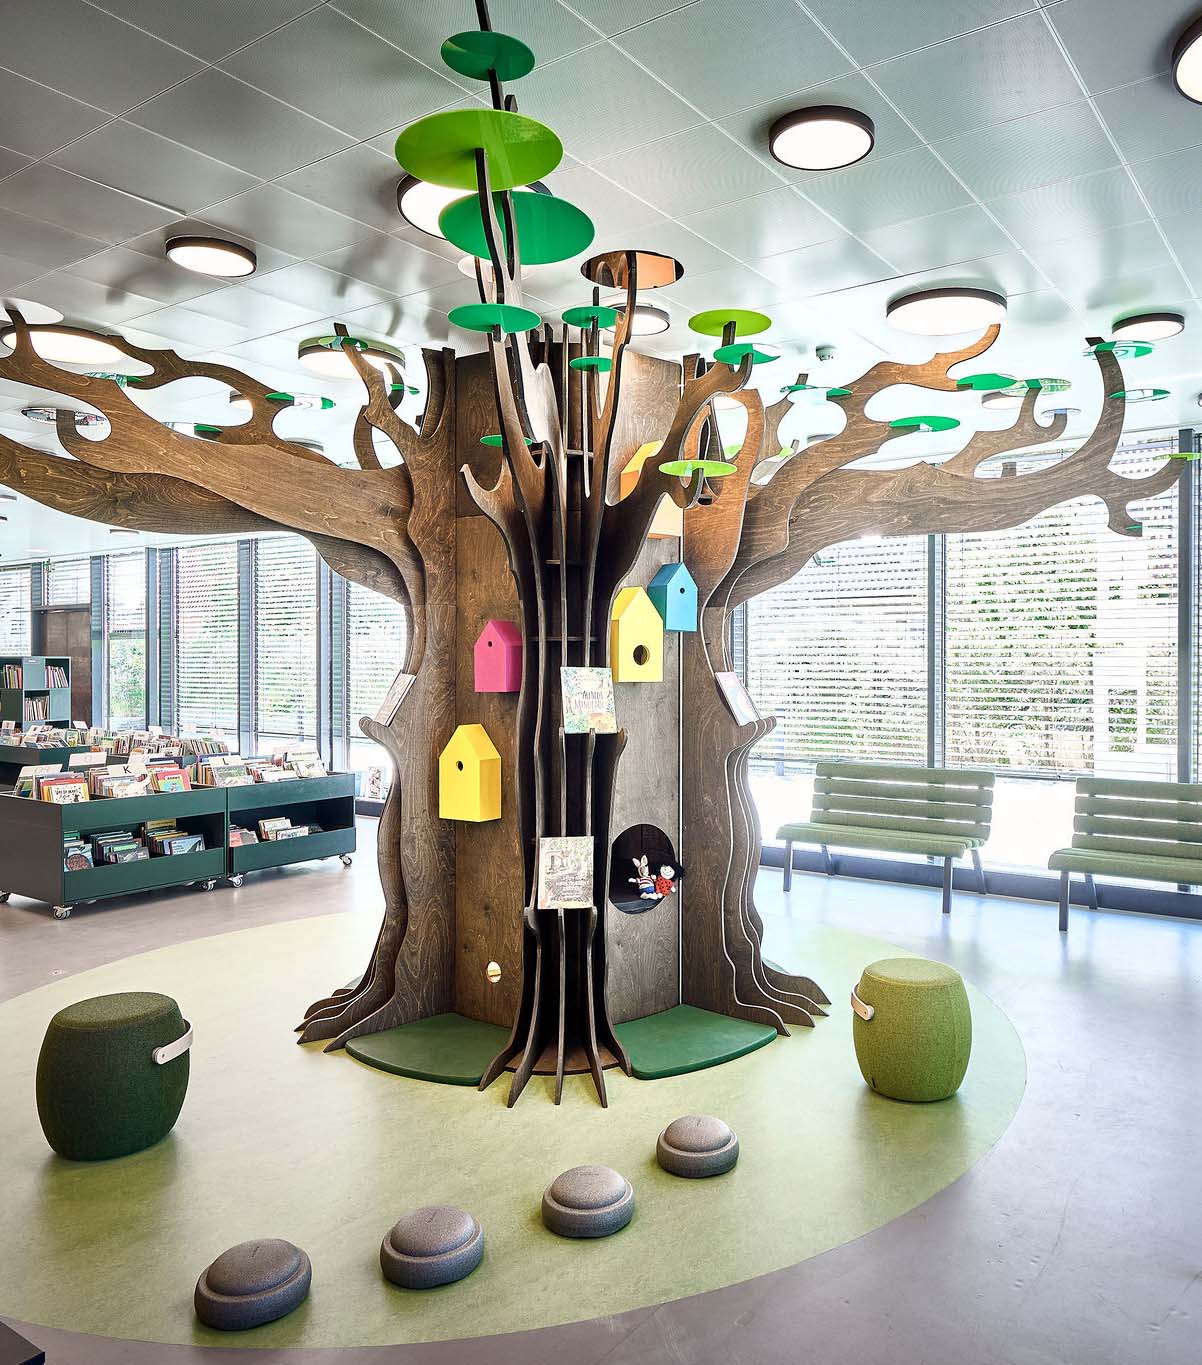 Træ med børneaktiviteter på bibliotek.